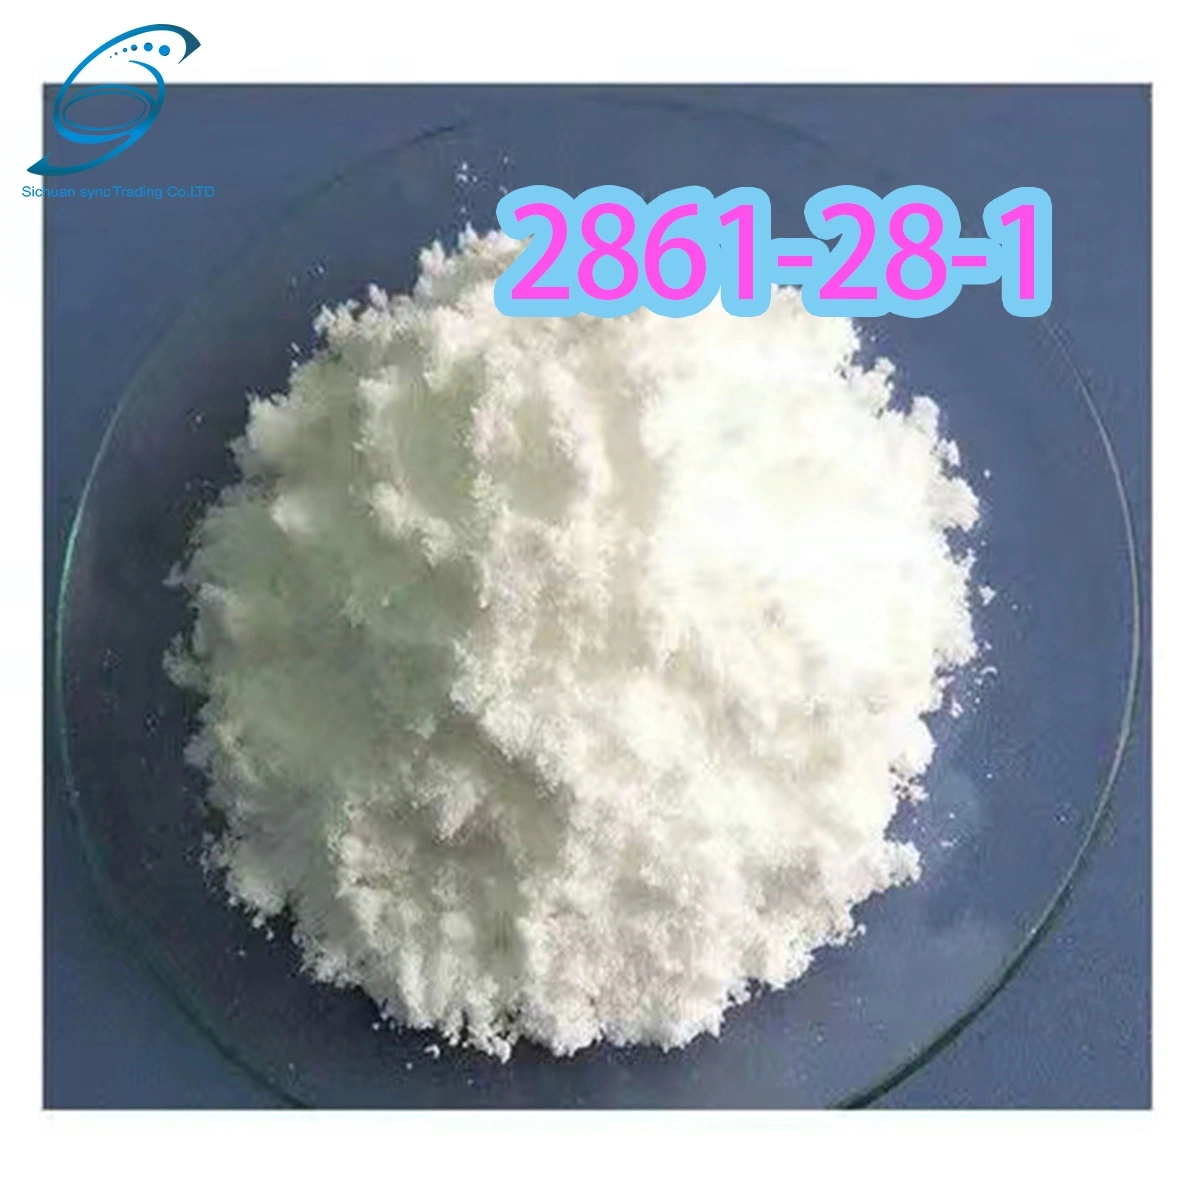 Qualité élevée 2- (1, 3-benzodioxol-5 yl) cas 2861-28-1/acide acétique ODM produit pharmaceutique intermédiaire BMK PMK Chine approvisionnement en usine (1, 3-Benzodioxol-5 YL